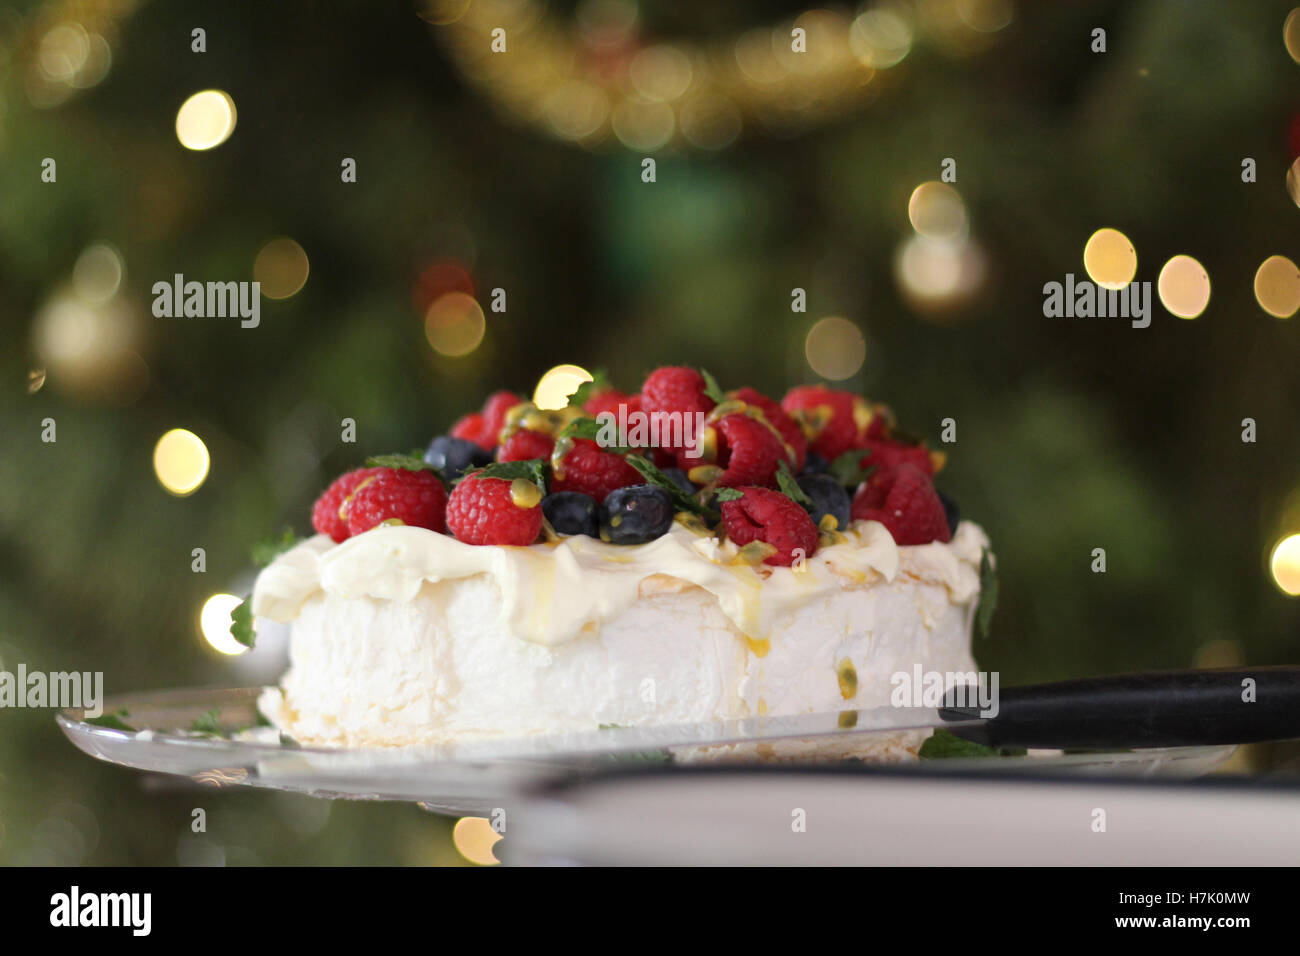 Pavlova con crema y bayas, postre de Australia. En el fondo es el árbol de Navidad con luces de hadas y chucherías. Foto de stock